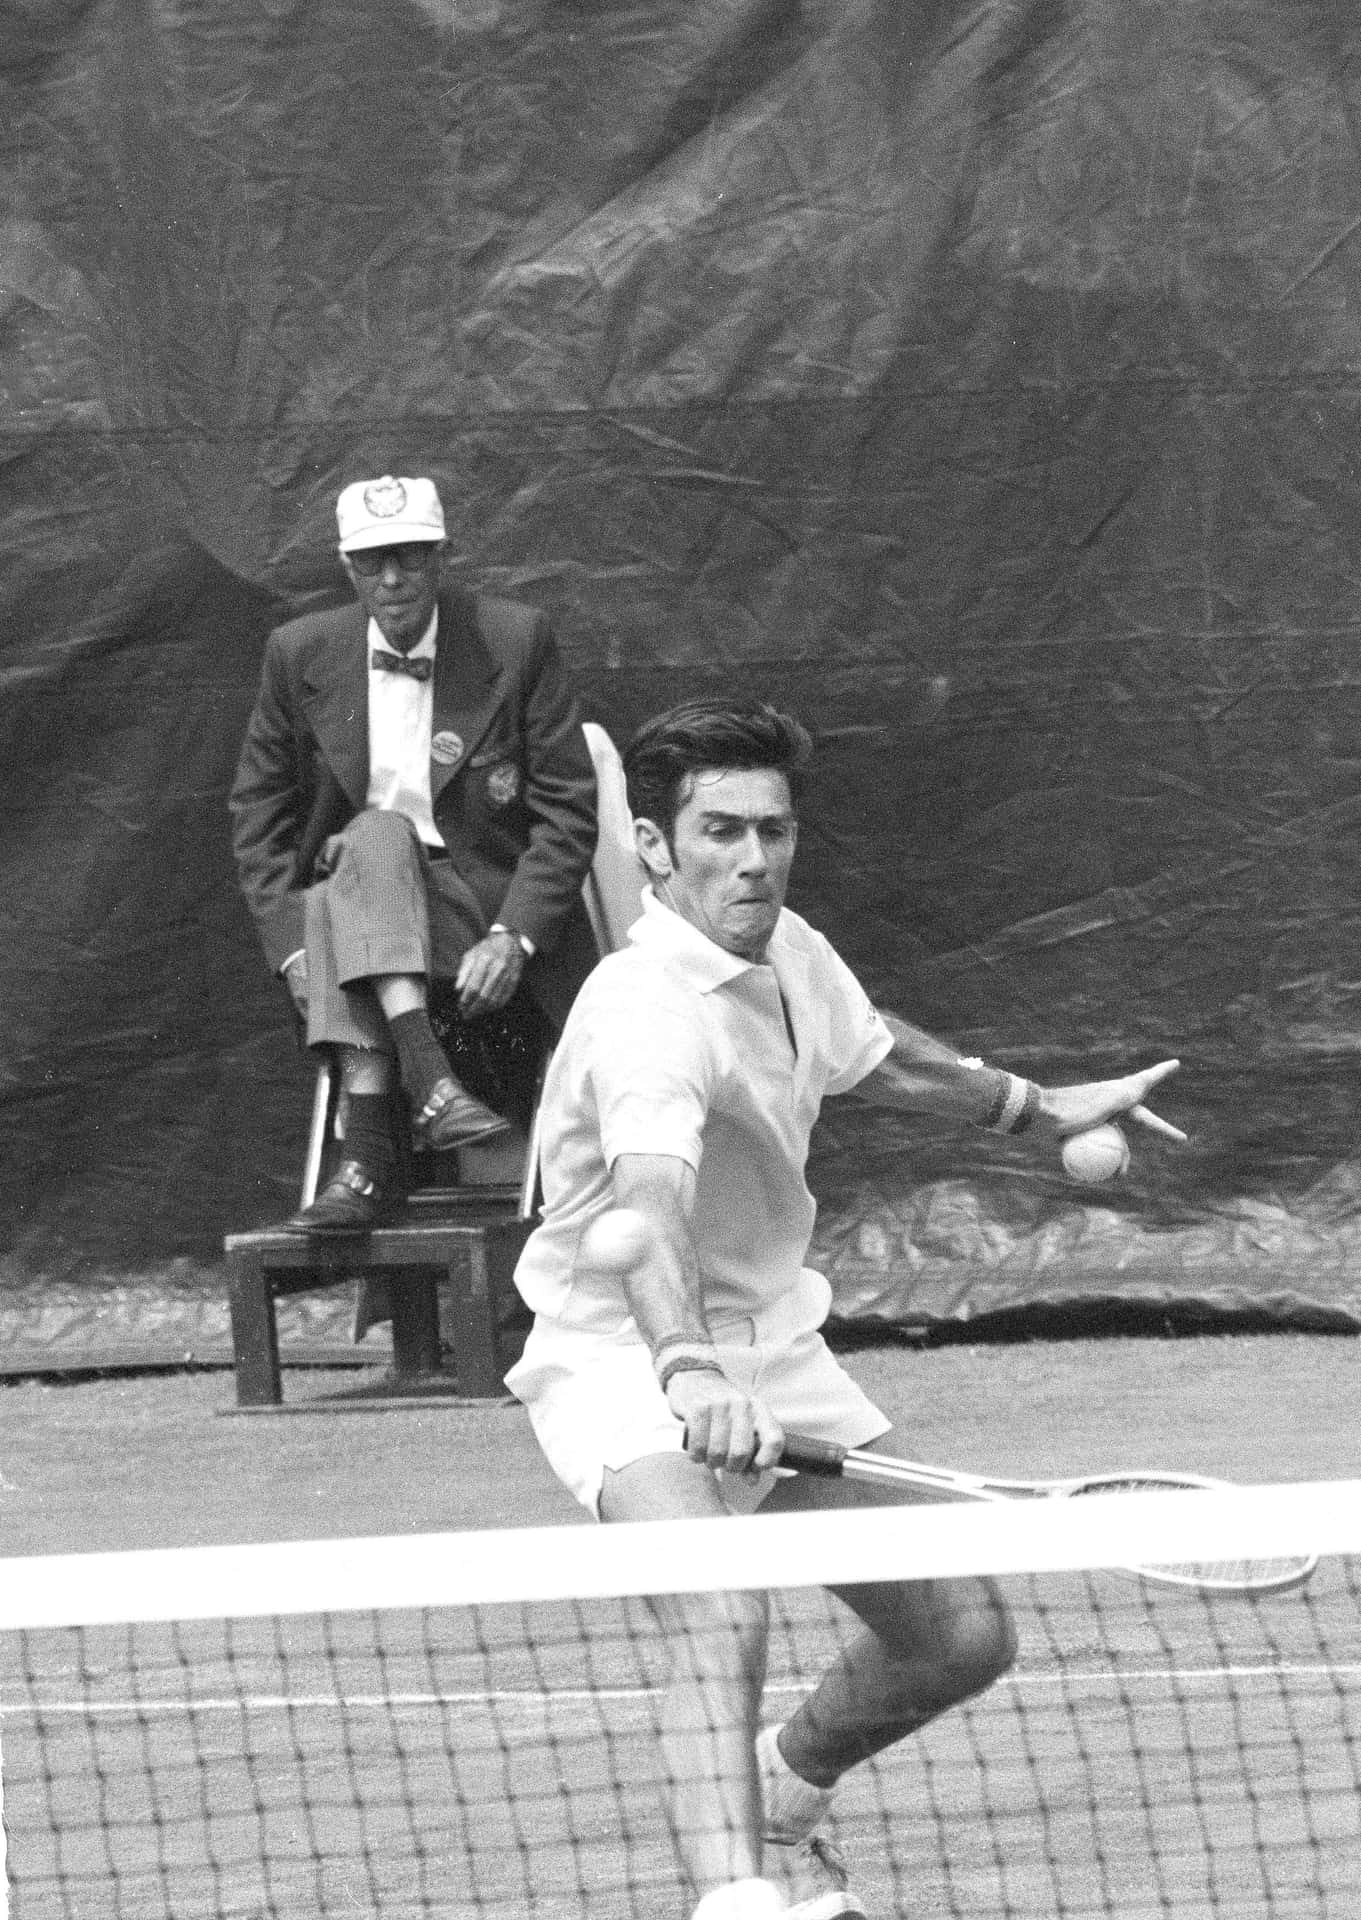 Juegode Tenis De Ken Rosewall En Fotografía En Blanco Y Negro. Fondo de pantalla